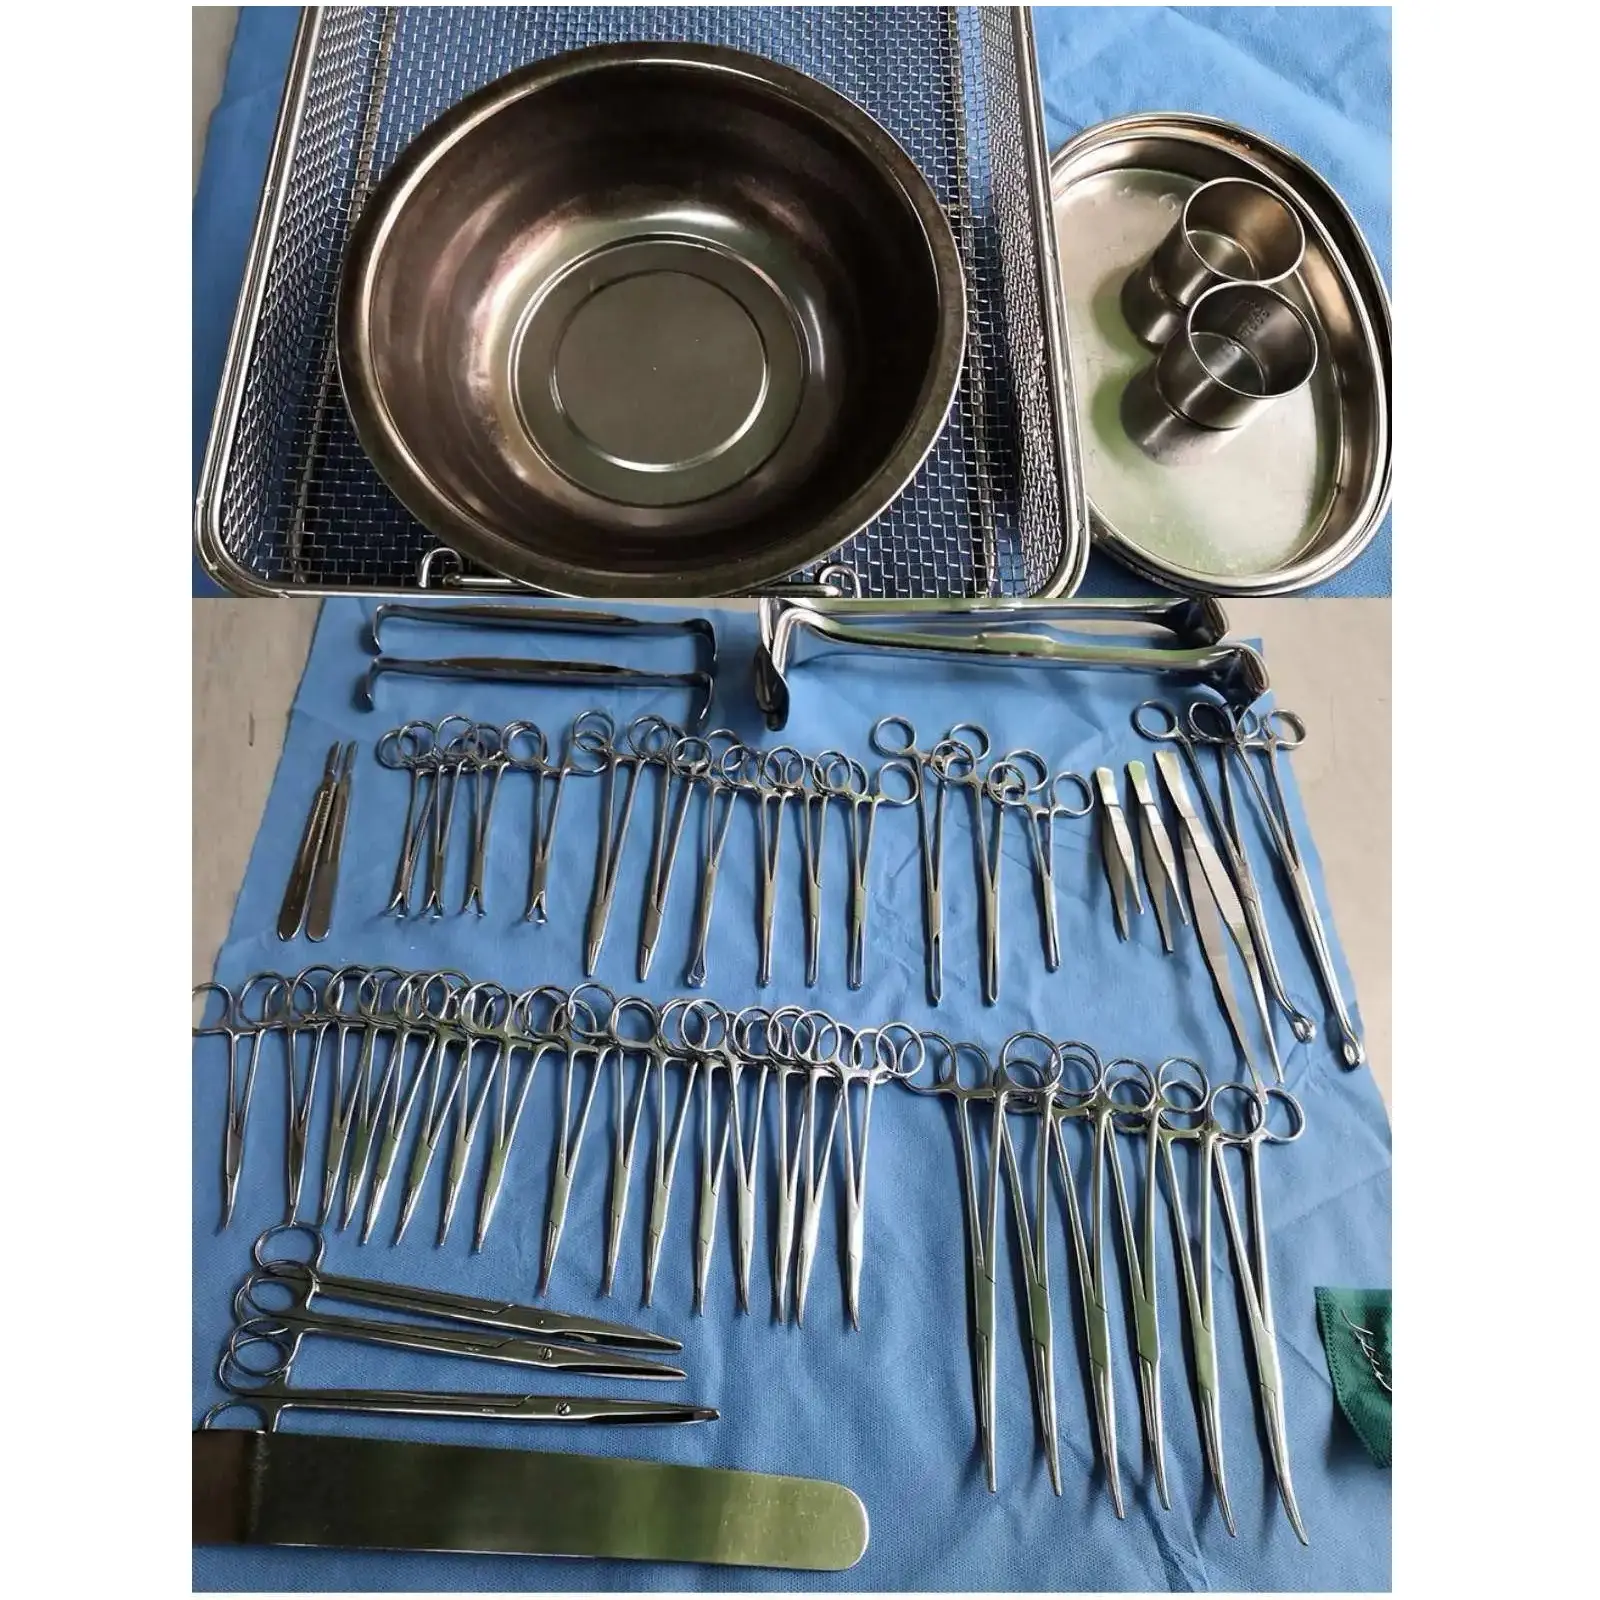 Kit d'instruments chirurgicaux majeurs pour la chirurgie générale, la chirurgie abdominale, l'appendicectomie